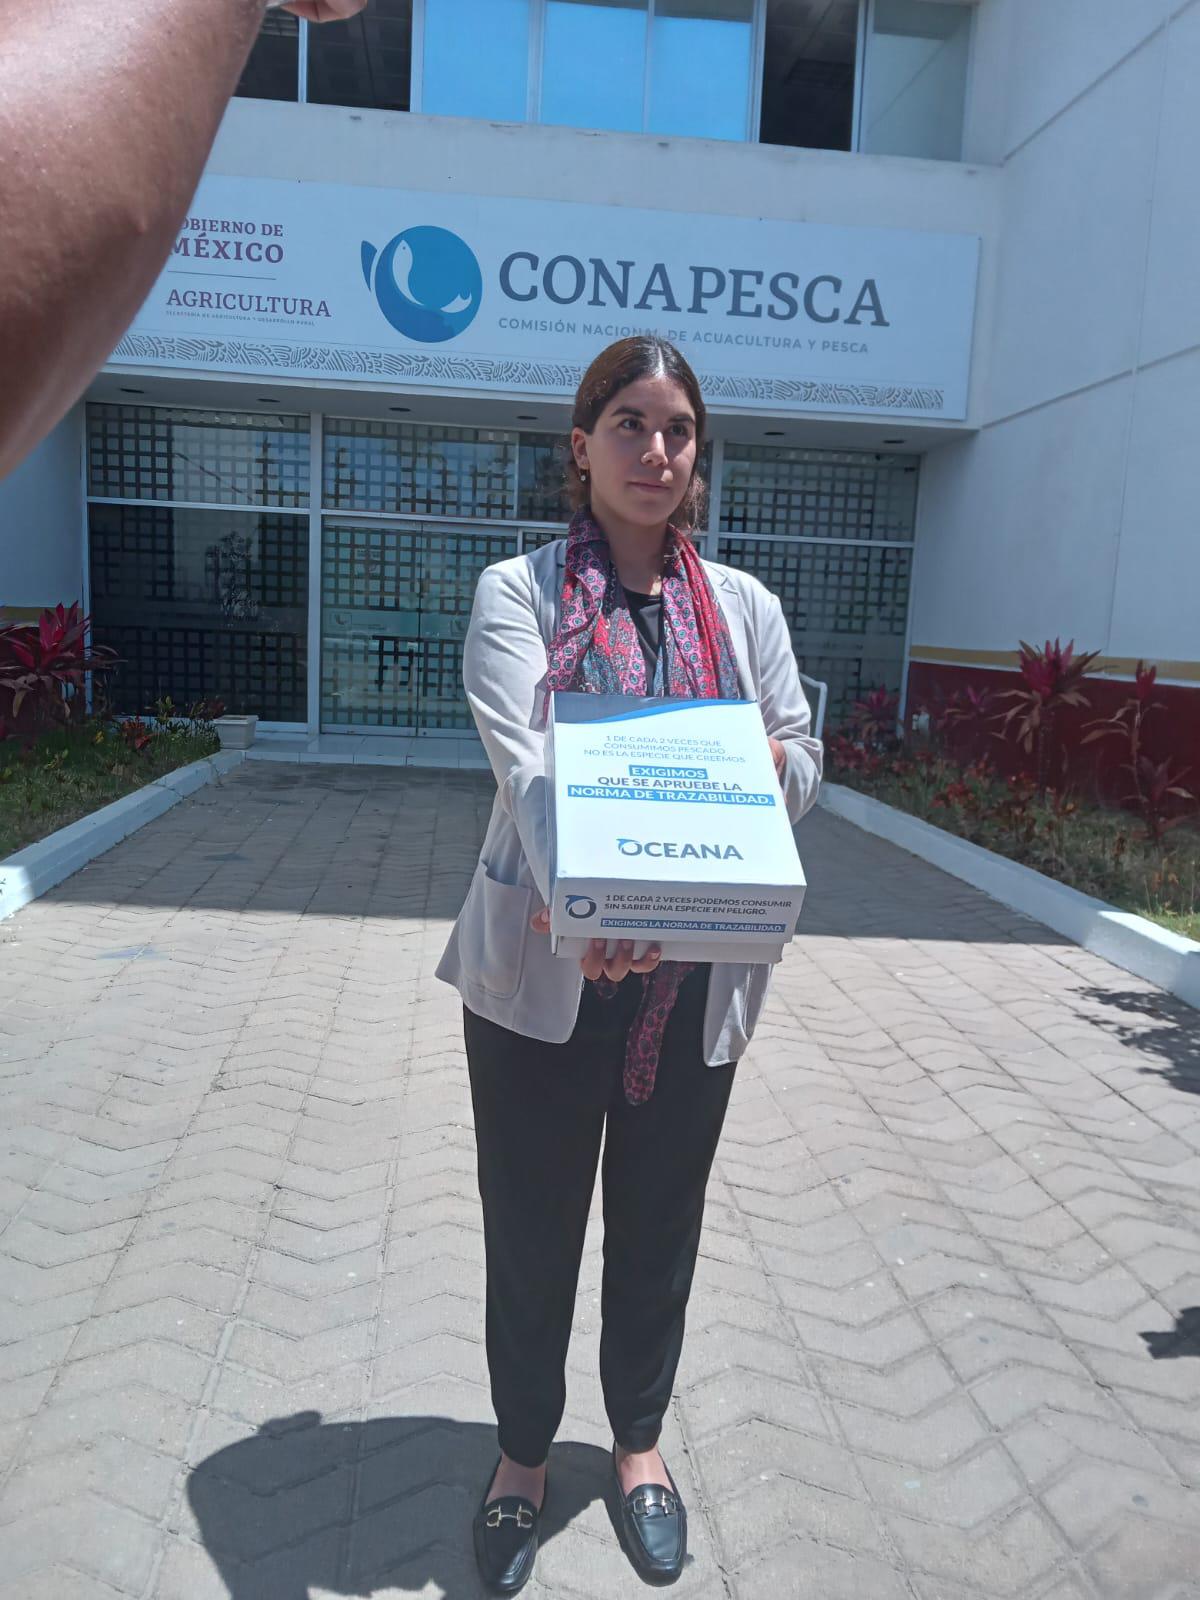 $!Entrega Oceana firmas a Conapesca para exigir que apruebe la Norma de Trazabilidad